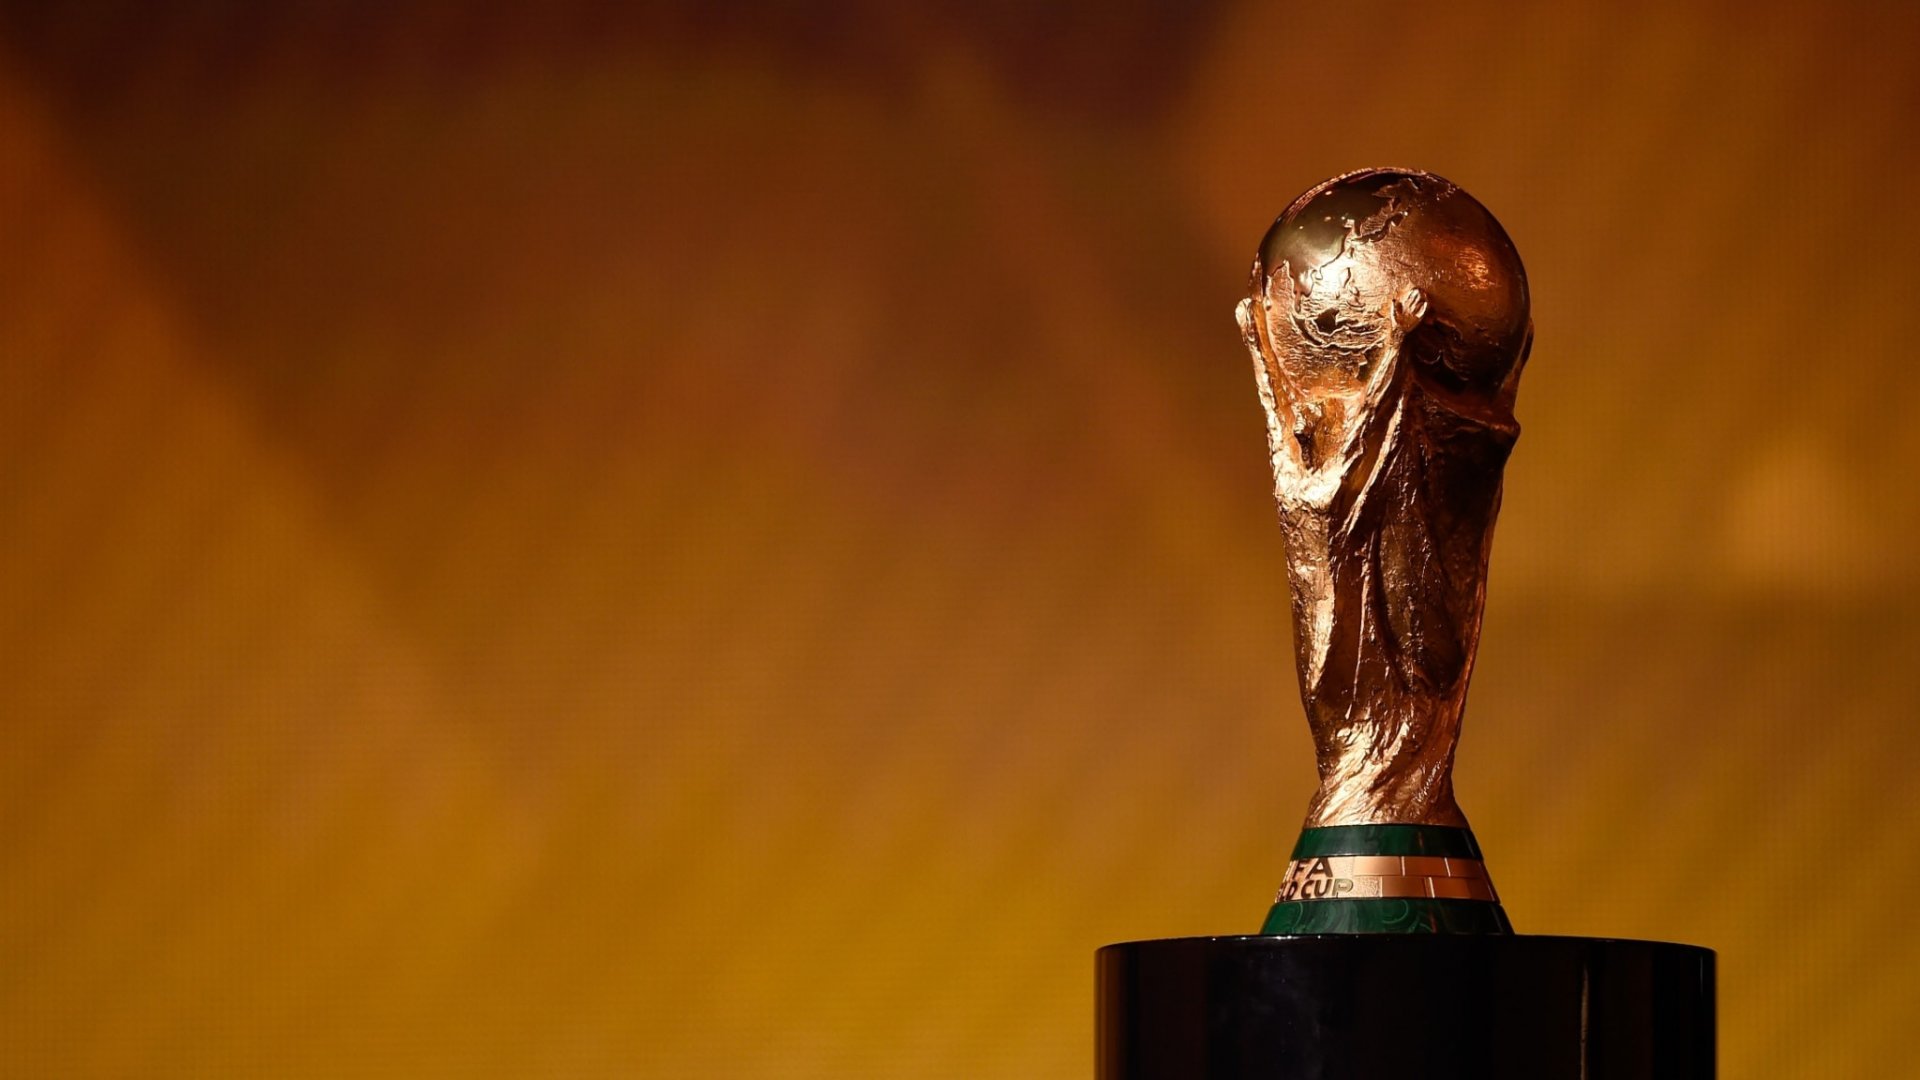 Mundial Qatar 2022: cuánto pesa la Copa del Mundo, de qué está